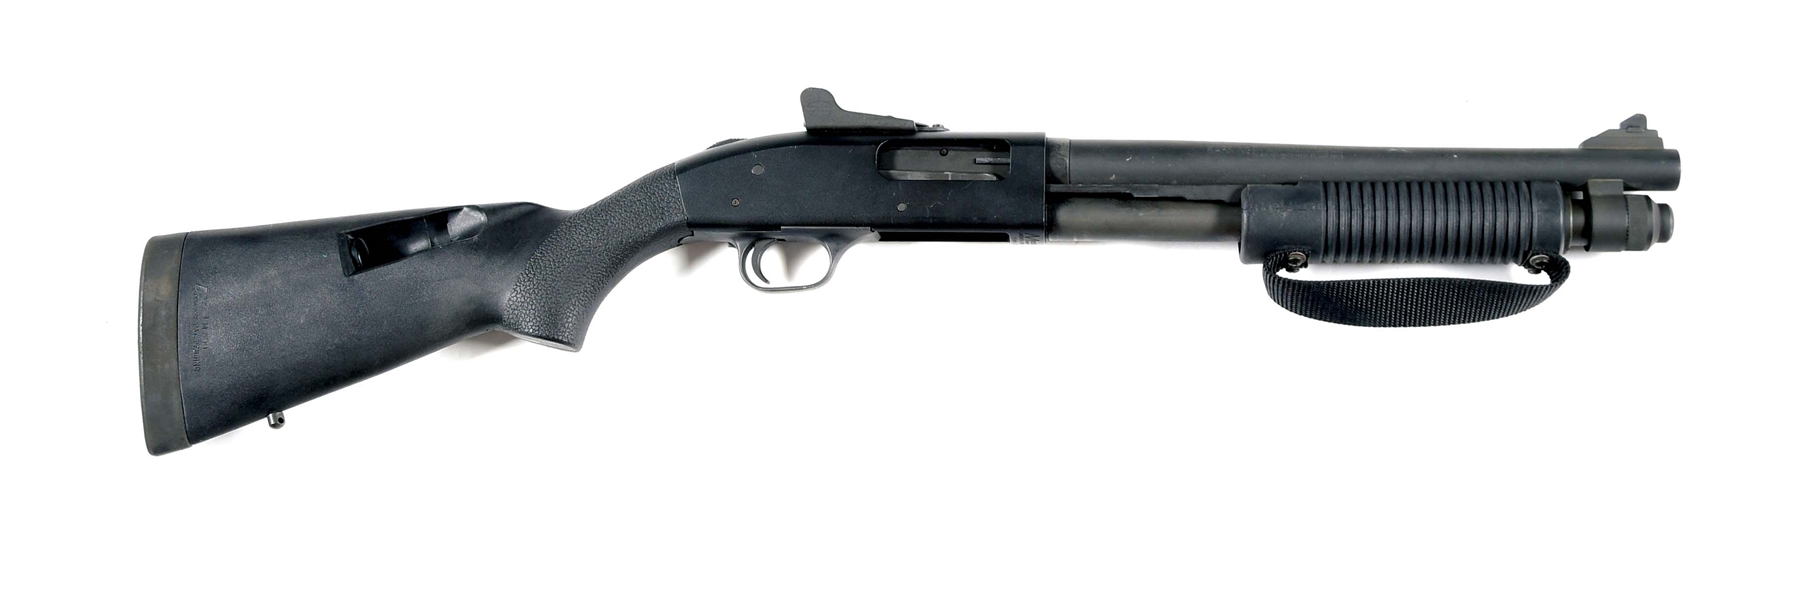 (N) MOSSBERG M590A1 SHORT BARREL PUMP AUCTION SHOTGUN (SHORT BARREL SHOTGUN).